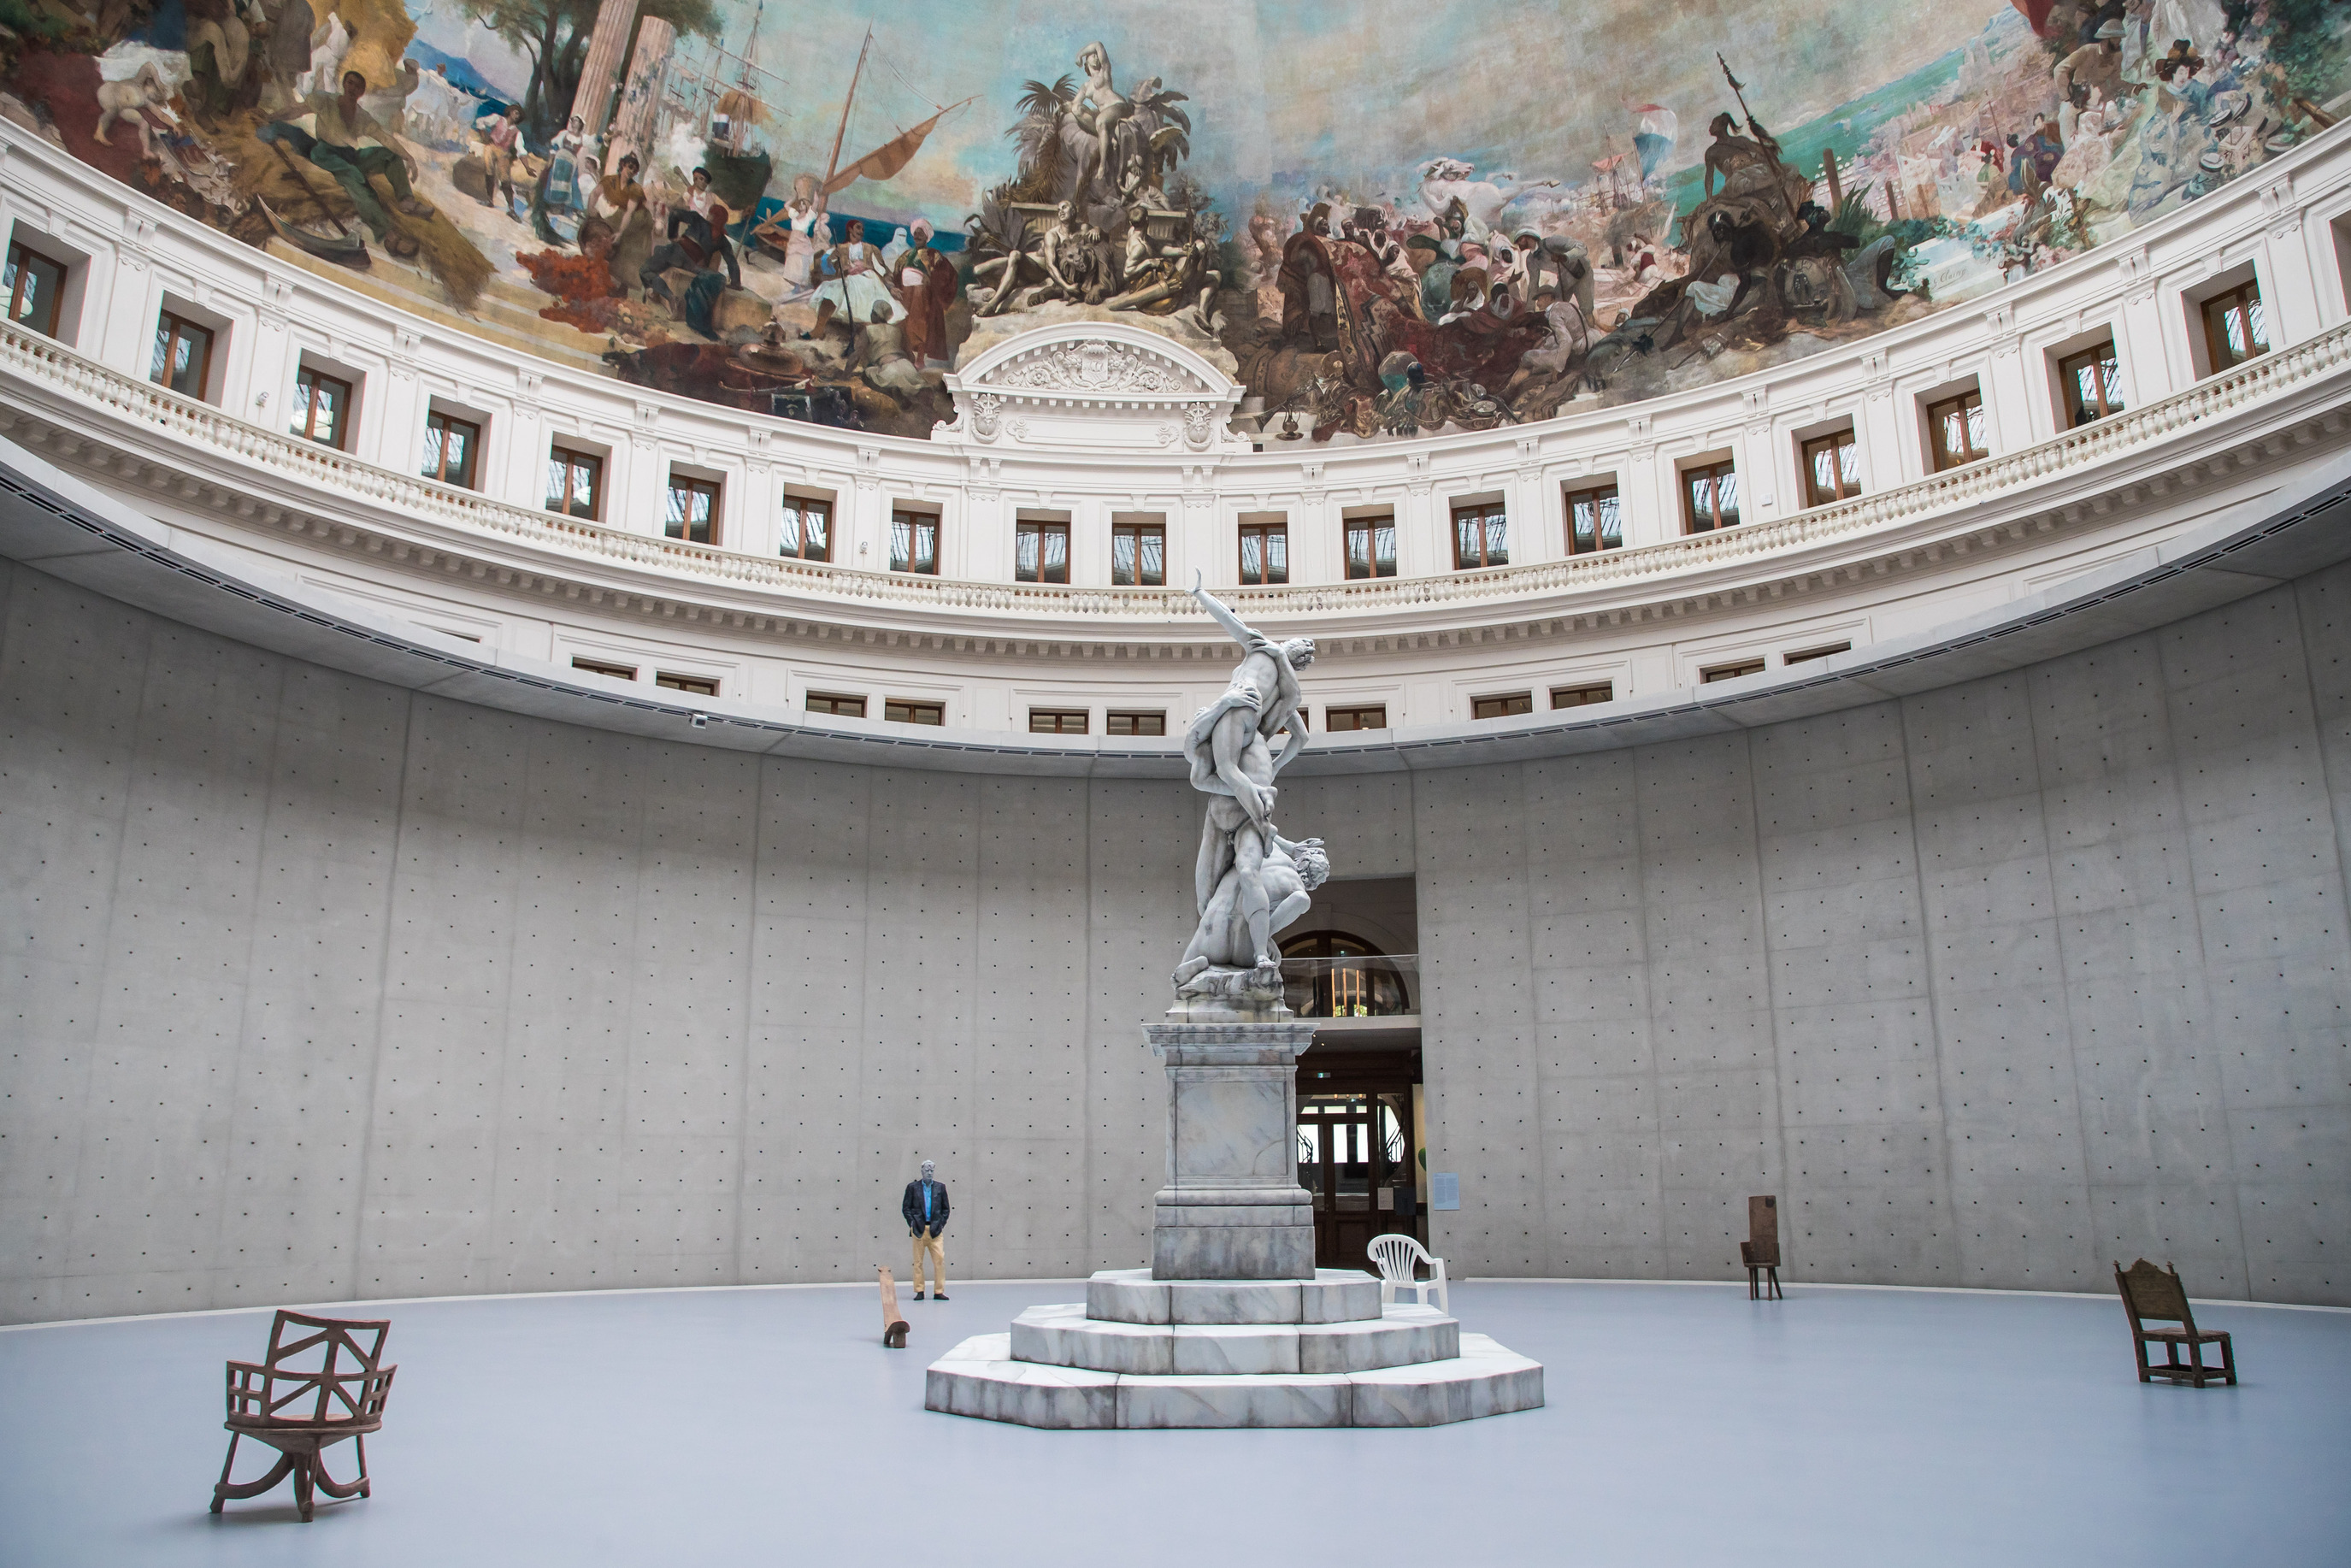 2021 年巴黎的當代藝術收藏中心重新開幕，在博物館的大廳展出 Urs Fischer 以雕像作品《強擄薩賓婦女》為靈感所創作出蠟像複製品。